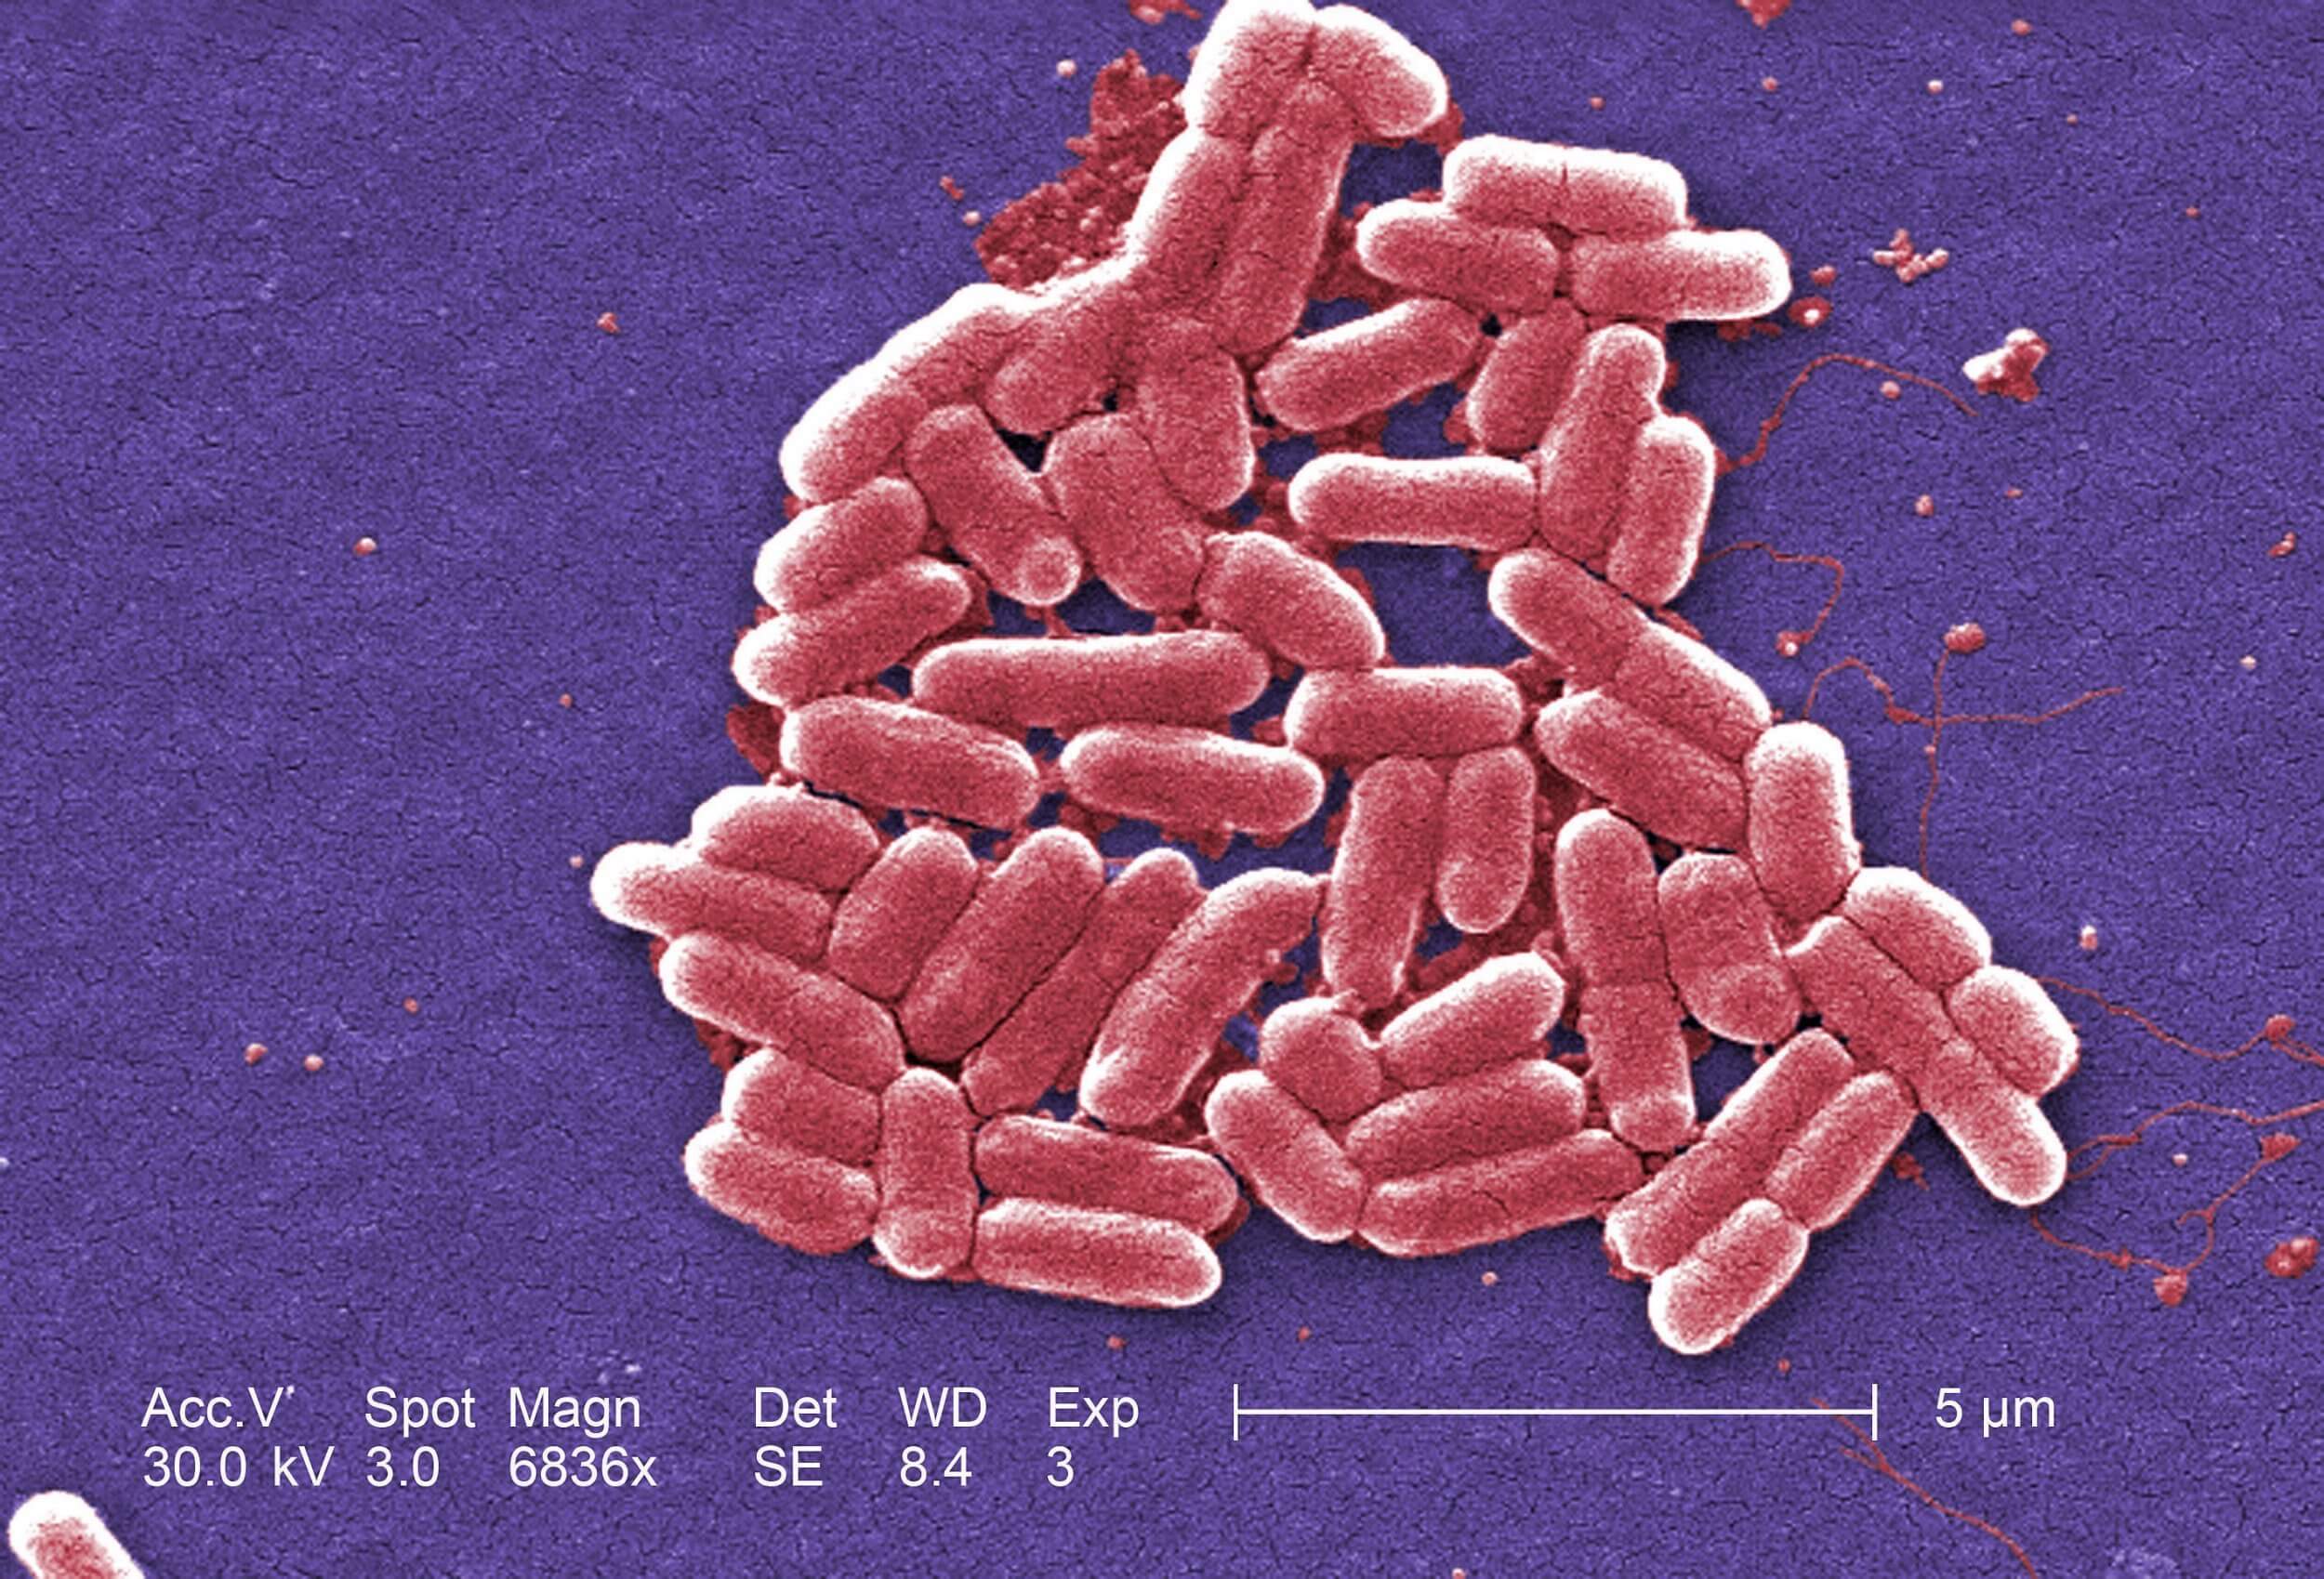 Menschen, die Ihre Hände nicht waschen nach dem Toilettengang, verbreiten Antibiotika resistente Bakterien